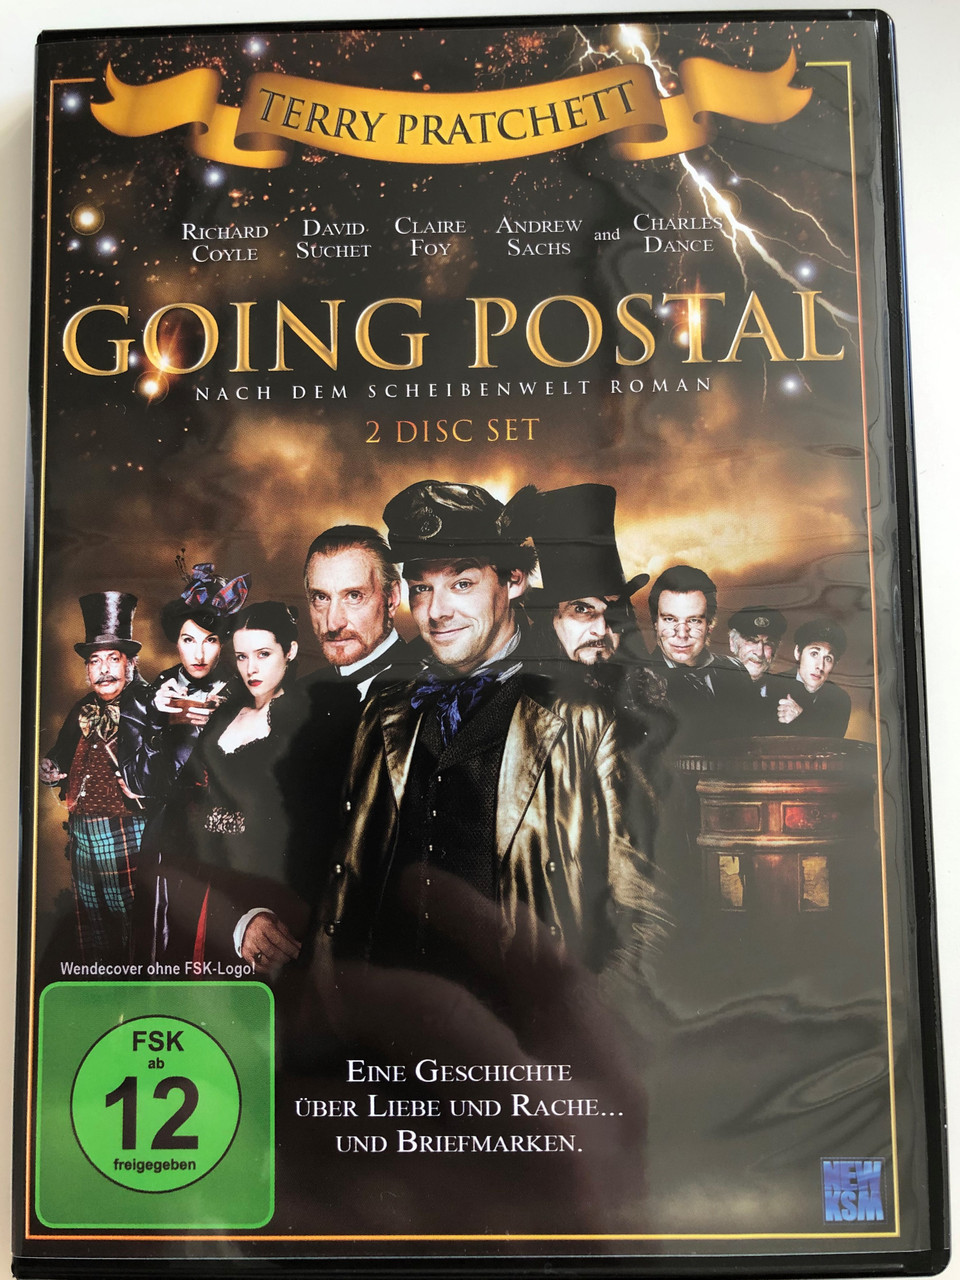 Terry Pratchett's Going Postal DVD 2010 / 2 DISC SET / Eine Geschichte über  liebe und rache... und Briefmarken / Directed by Jon Jones / Starring:  Richard Coyle, David Suchet, Charles Dance,